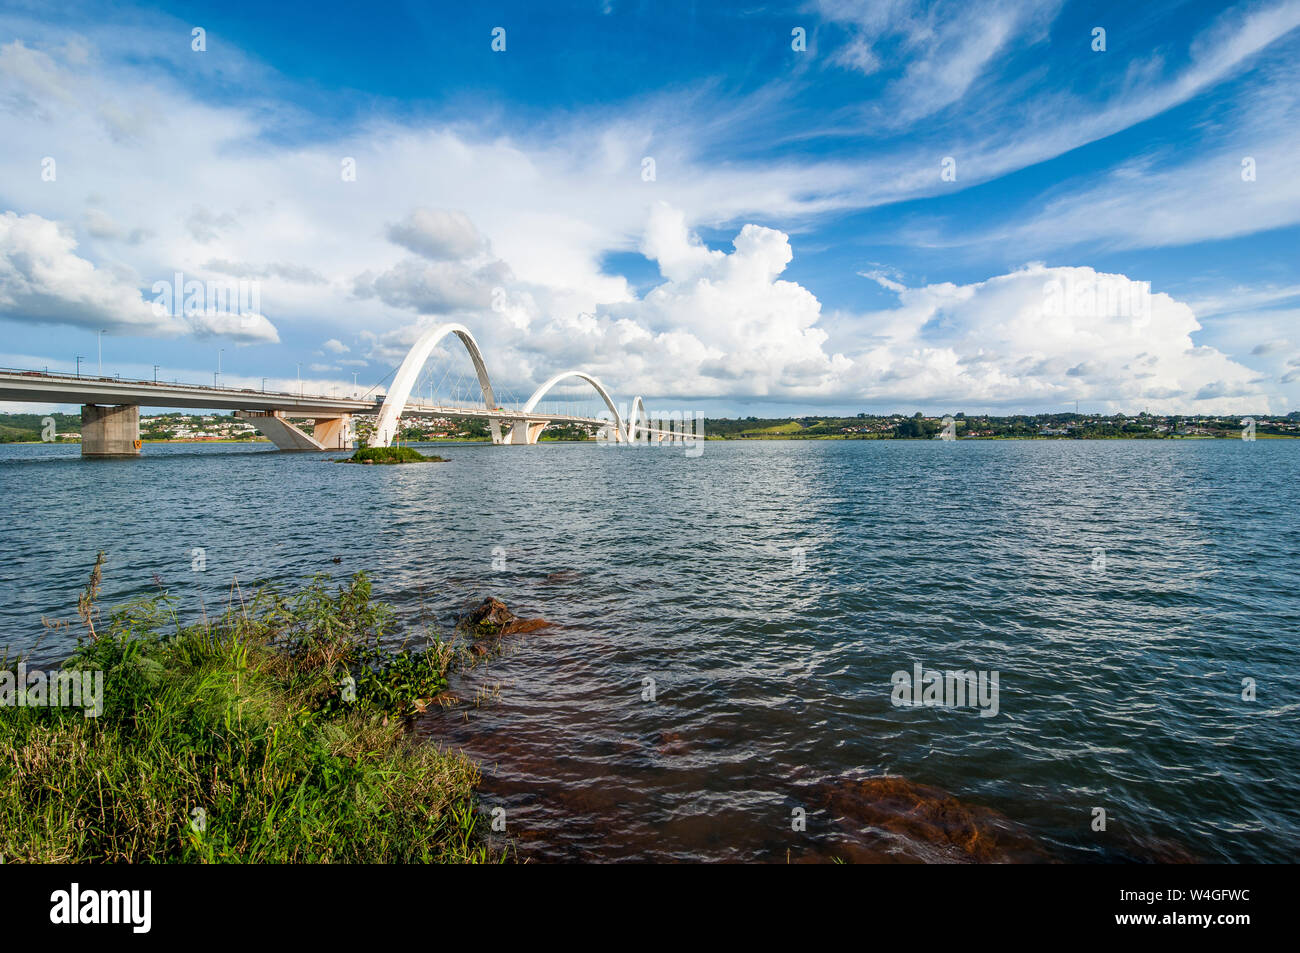 Juscelino Kubitschek bridge in Brasilia, Brazil Stock Photo